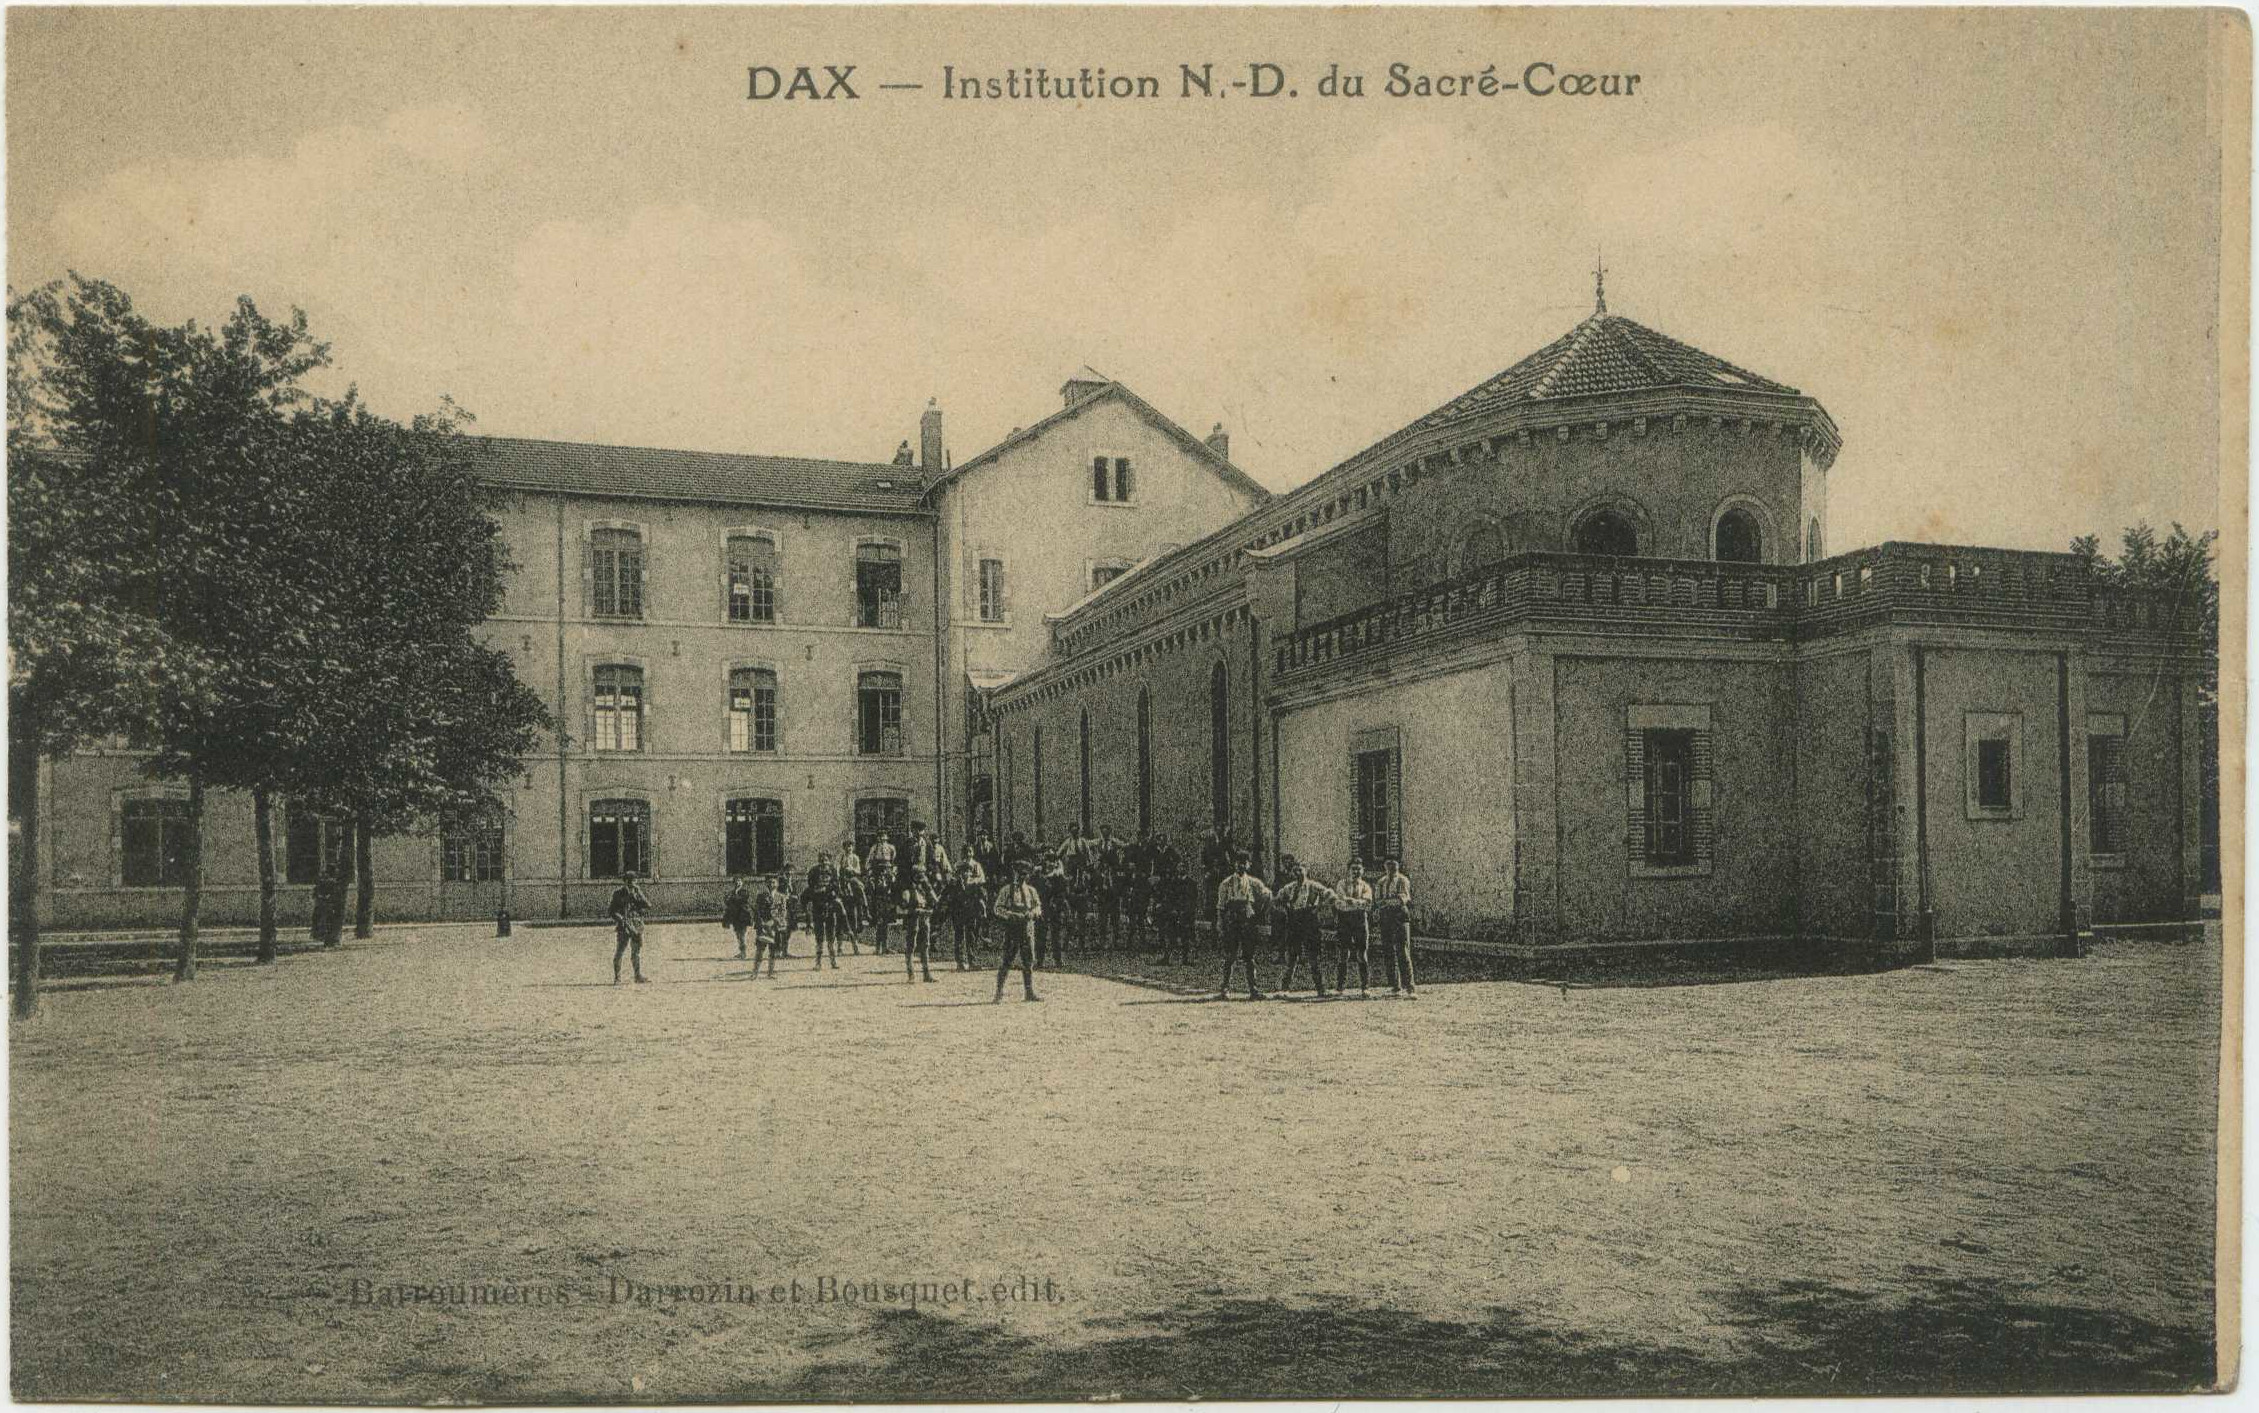 Dax - Institution N.-D. du Sacré-Coeur